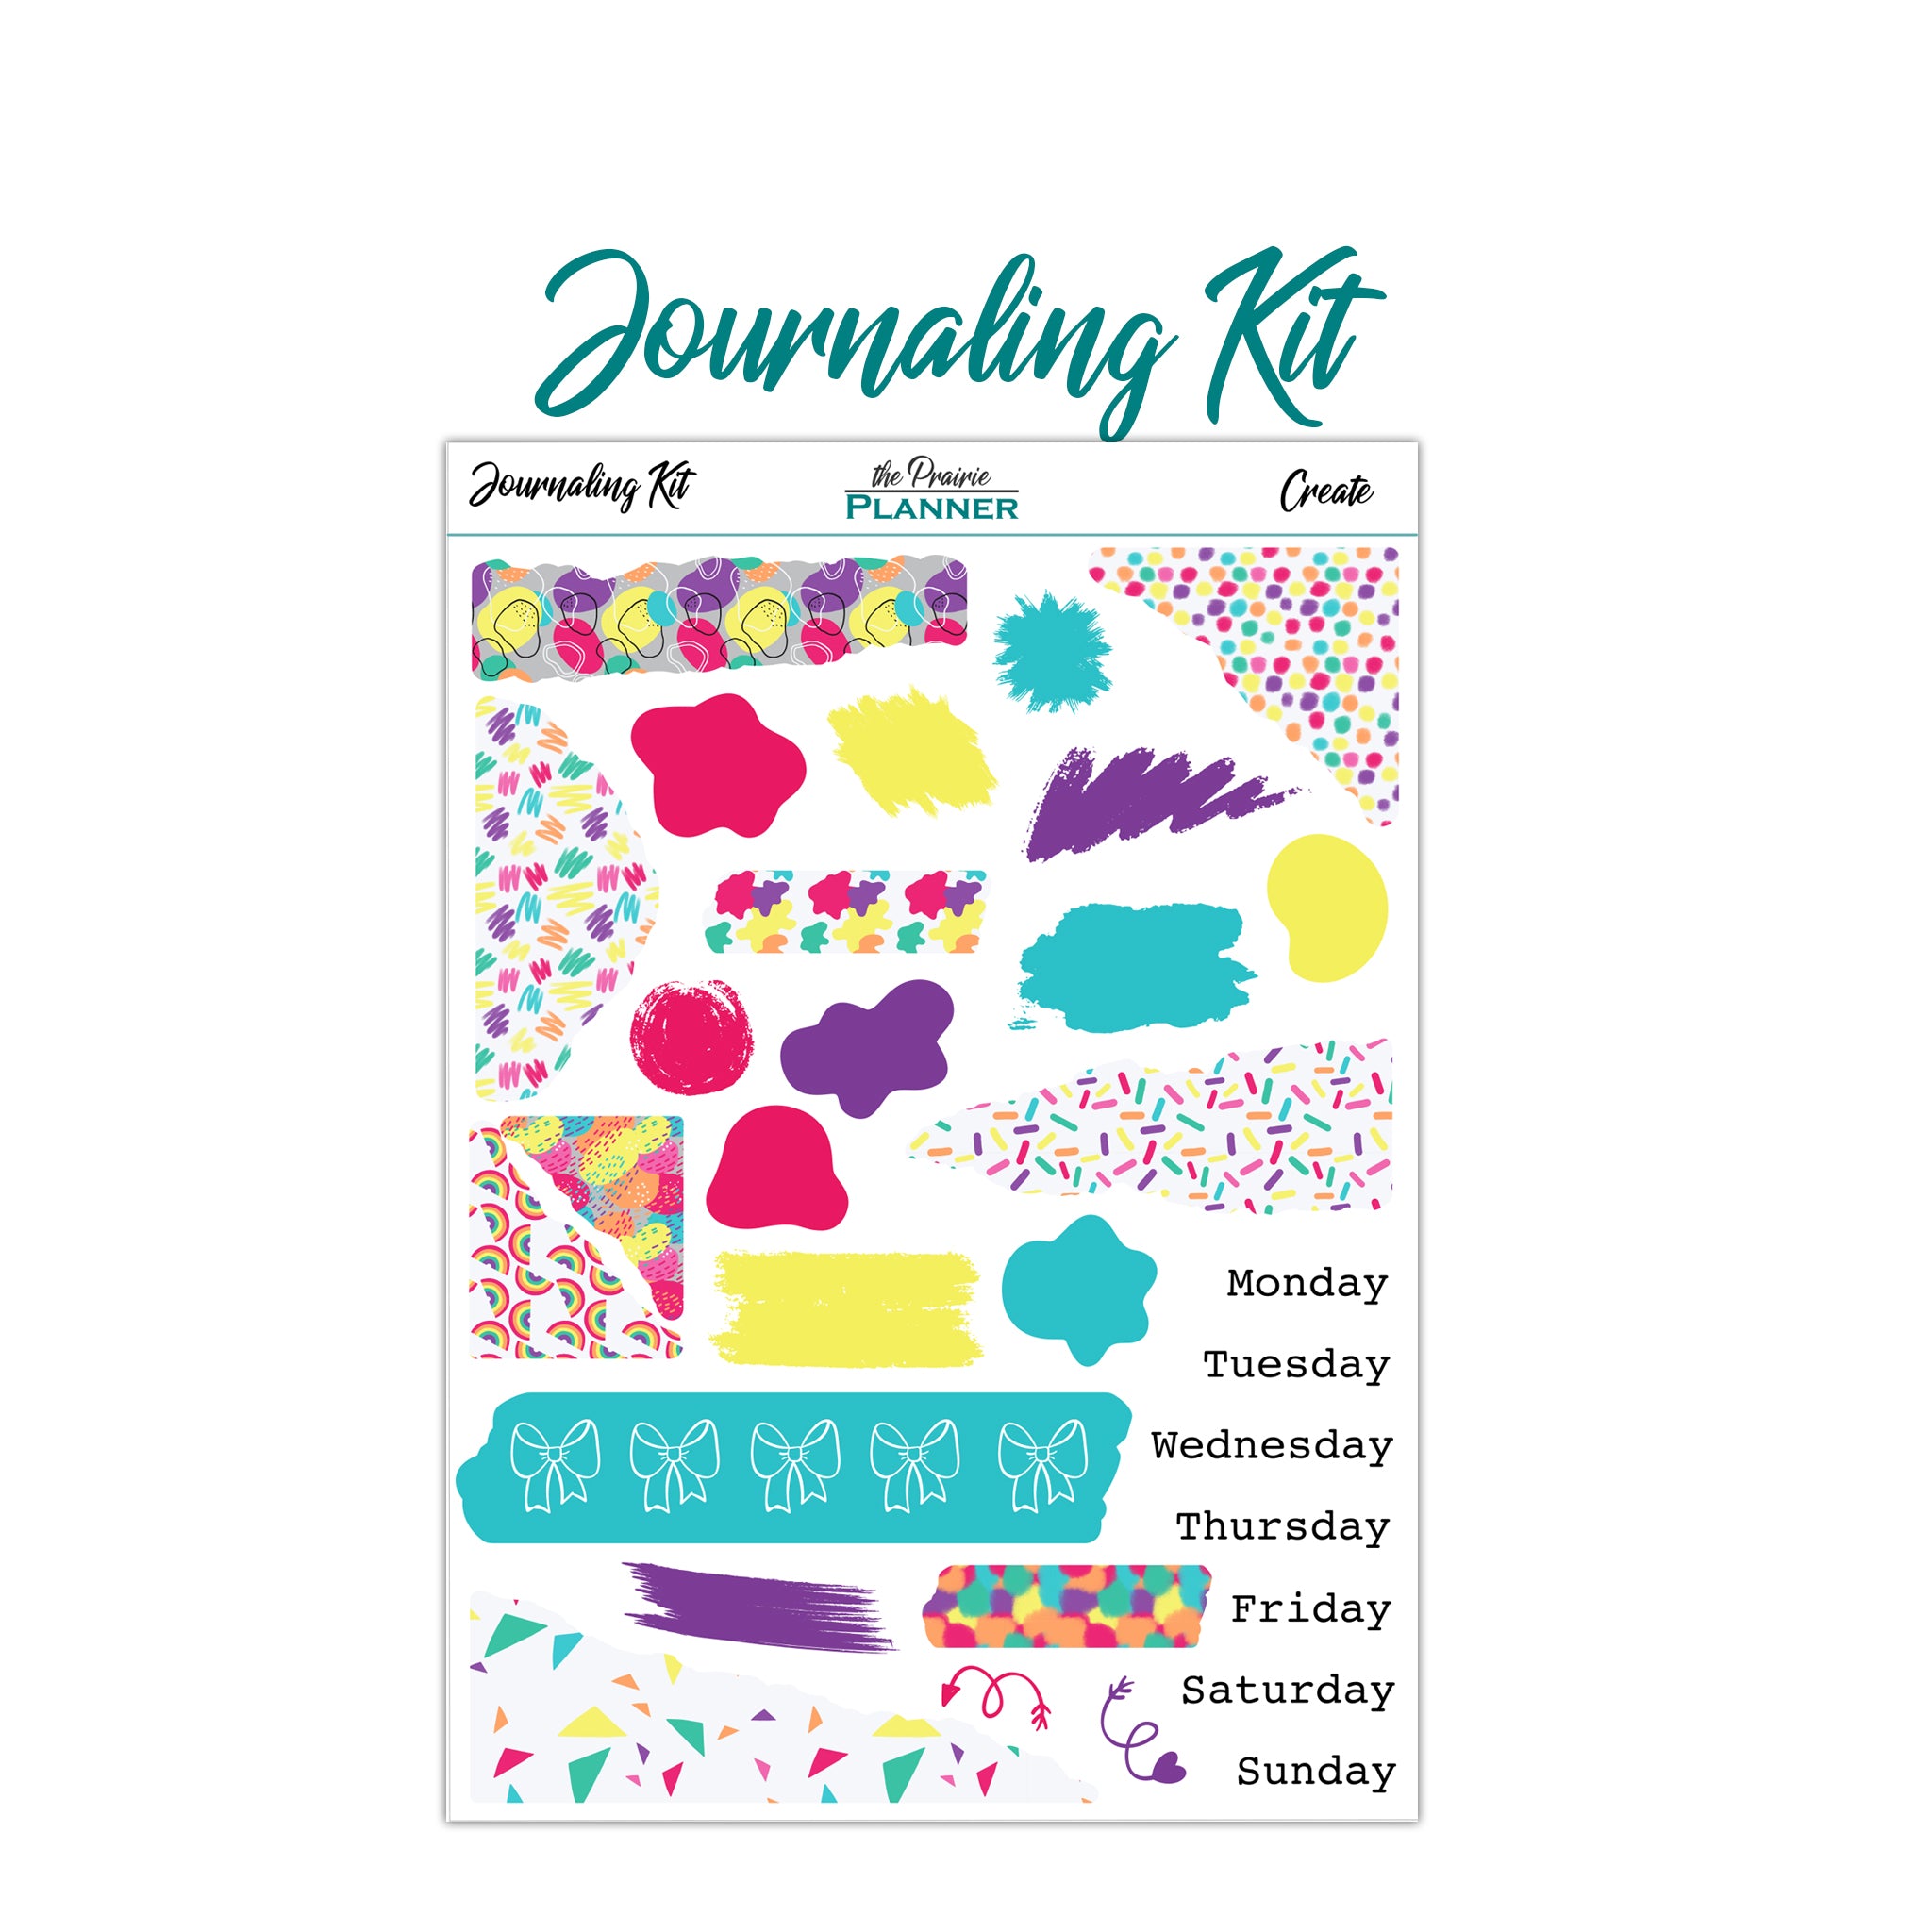 Create - Journaling Kit